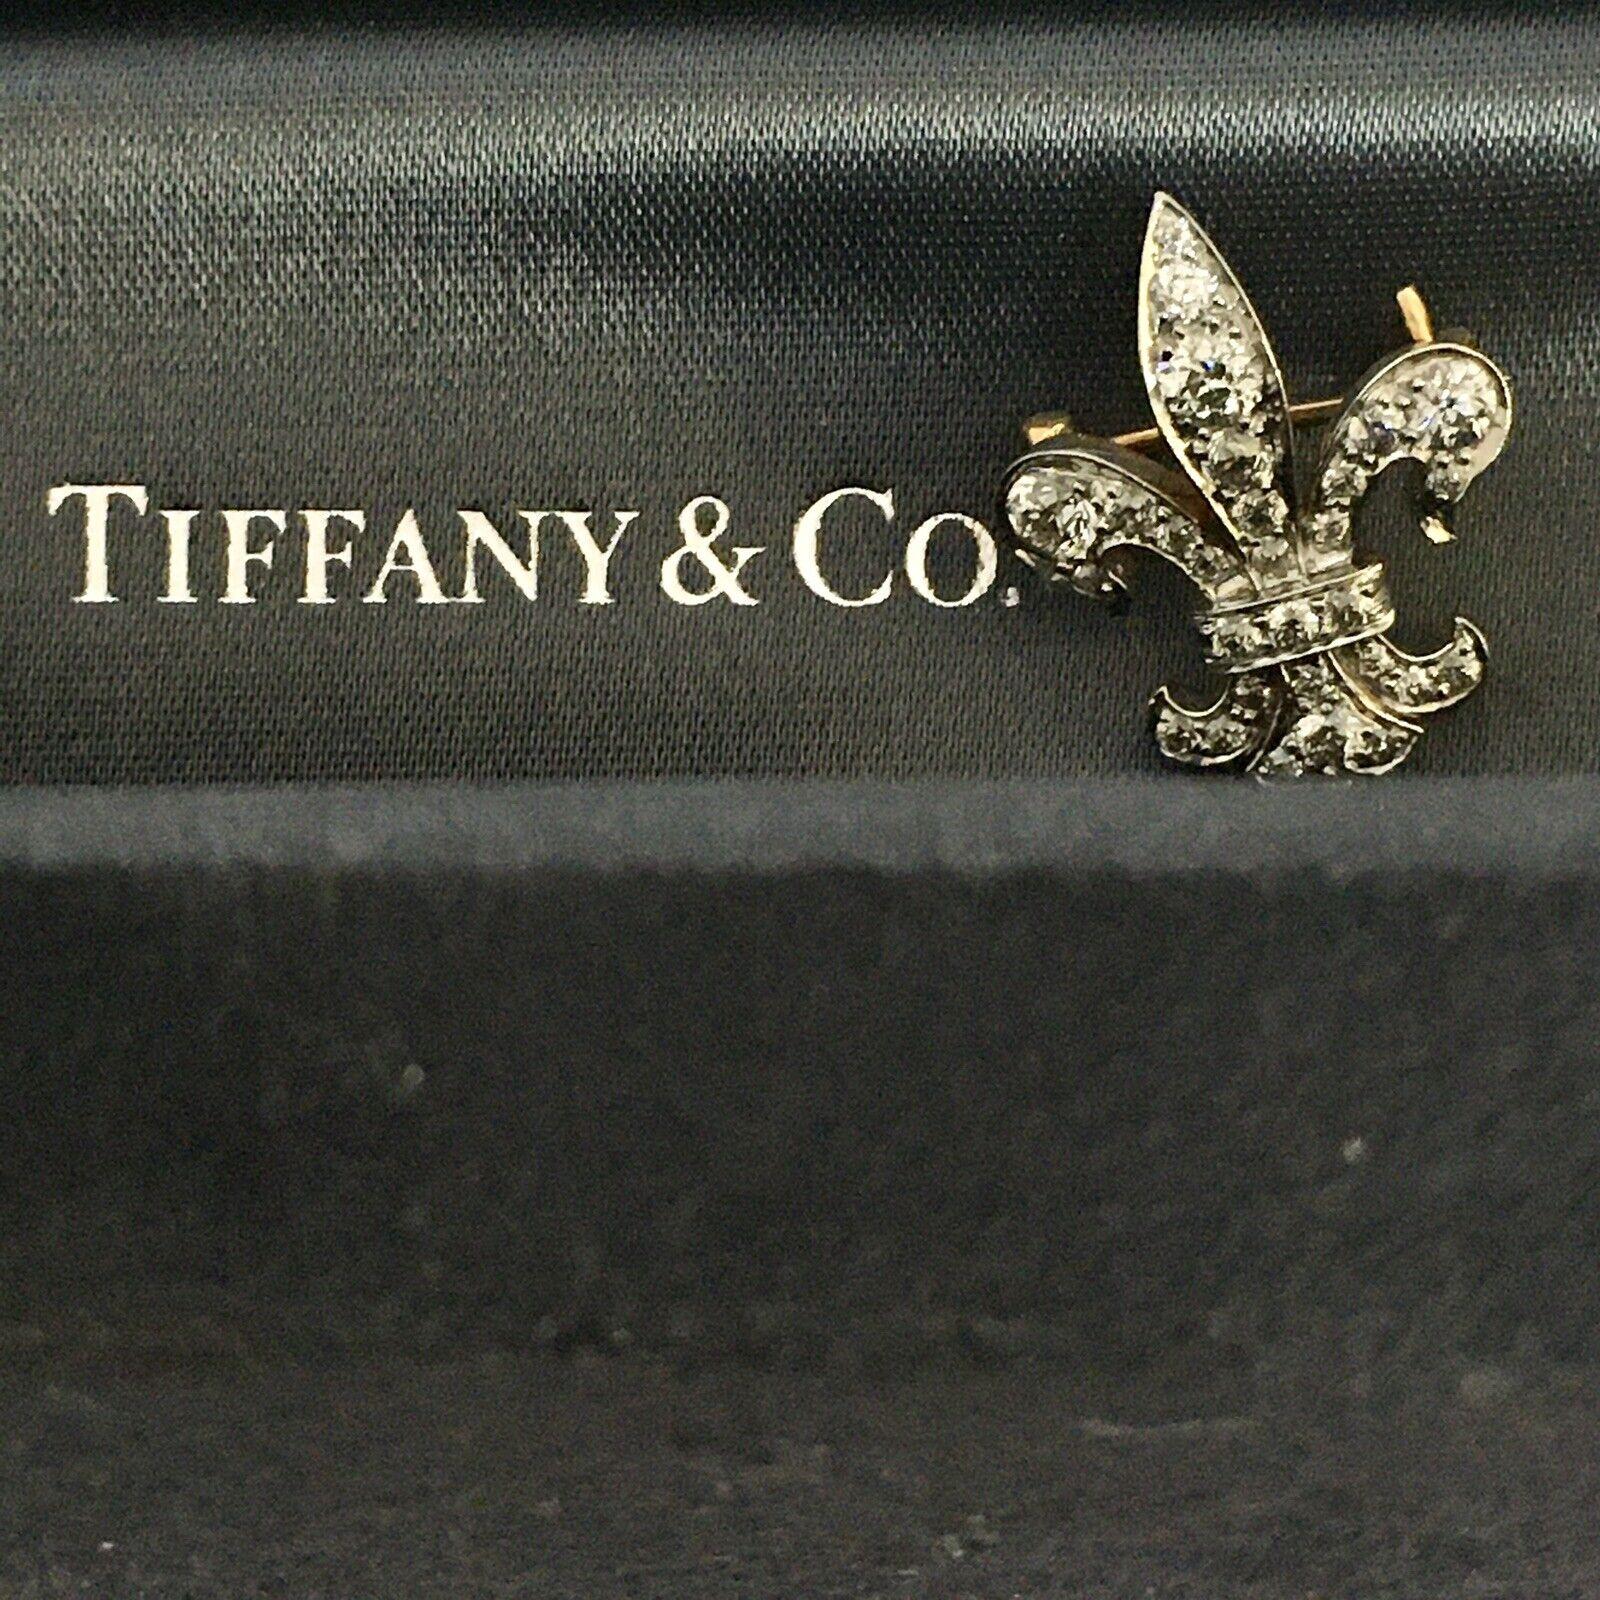 Eine antike, edwardianische/spätviktorianische Ära, Fleur-de-Lis-Brosche mit der Aufschrift Tiffany & Co, besetzt mit Diamanten im alten europäischen Schliff mit einem Gesamtgewicht von ca. 0,75-1,00 Karat, der größte Diamant wiegt ca. 0,20 Karat,